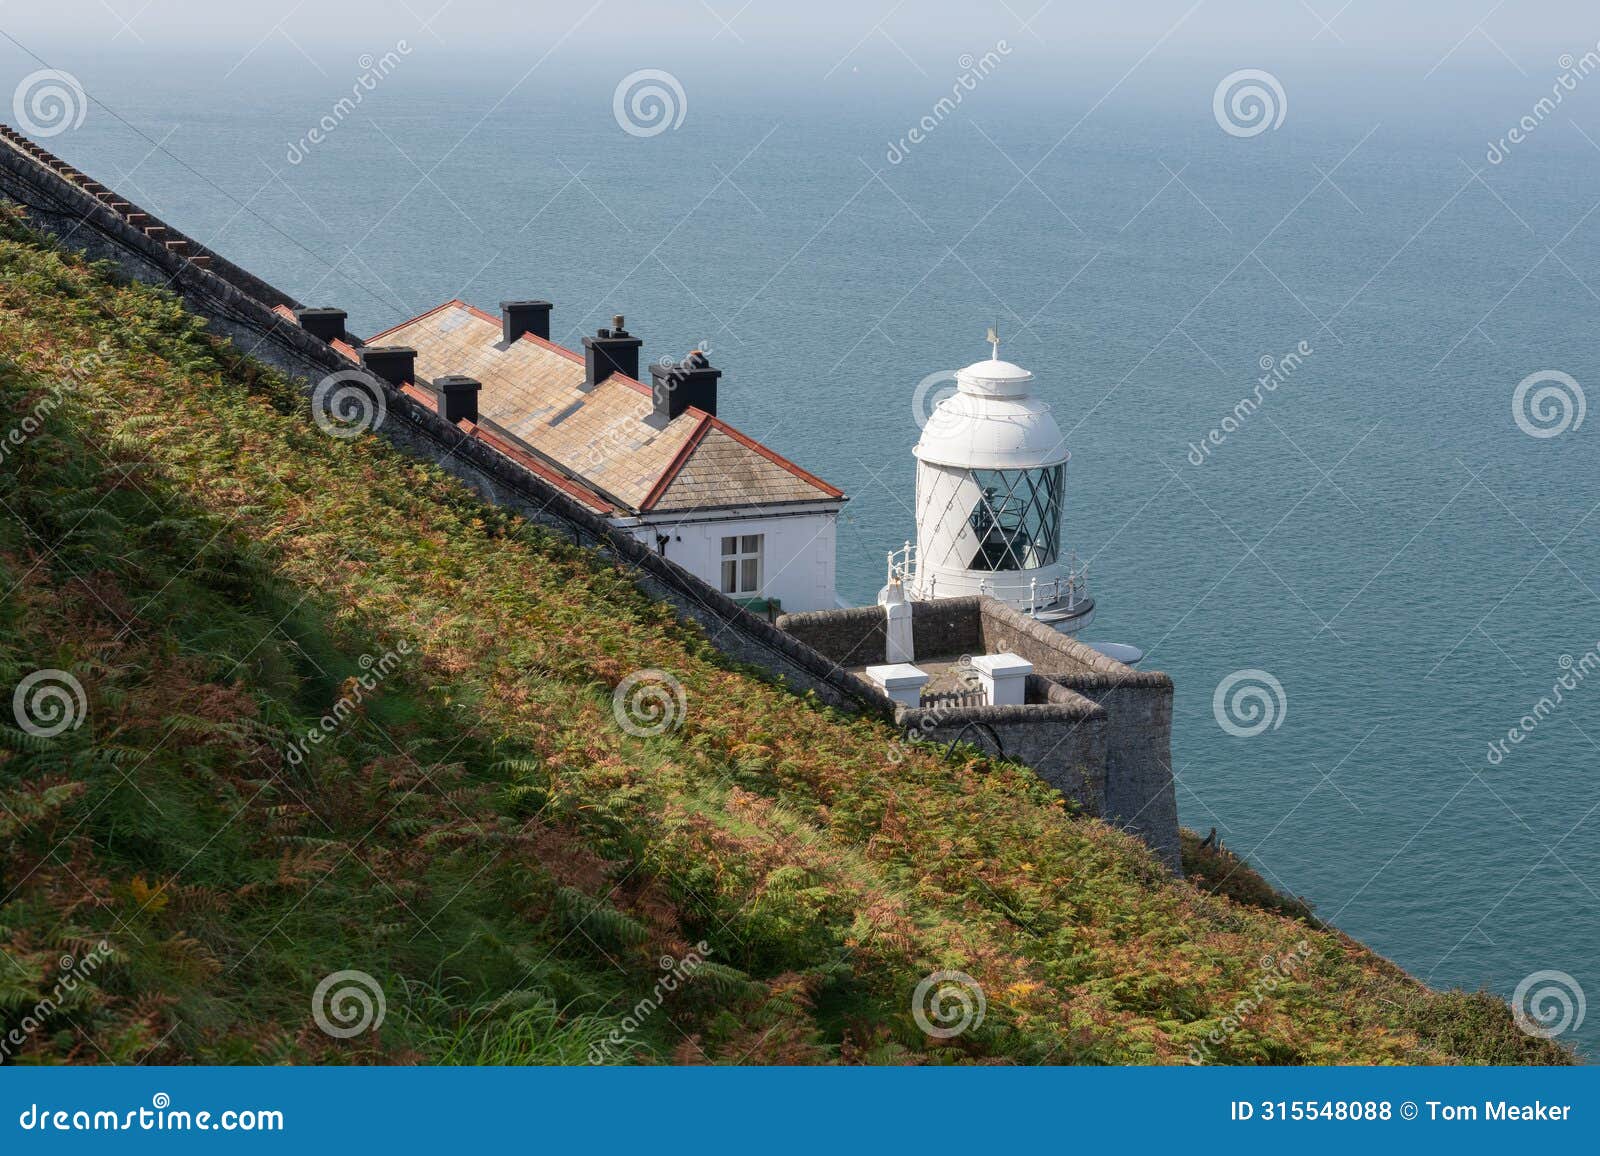 foreland lighthouse